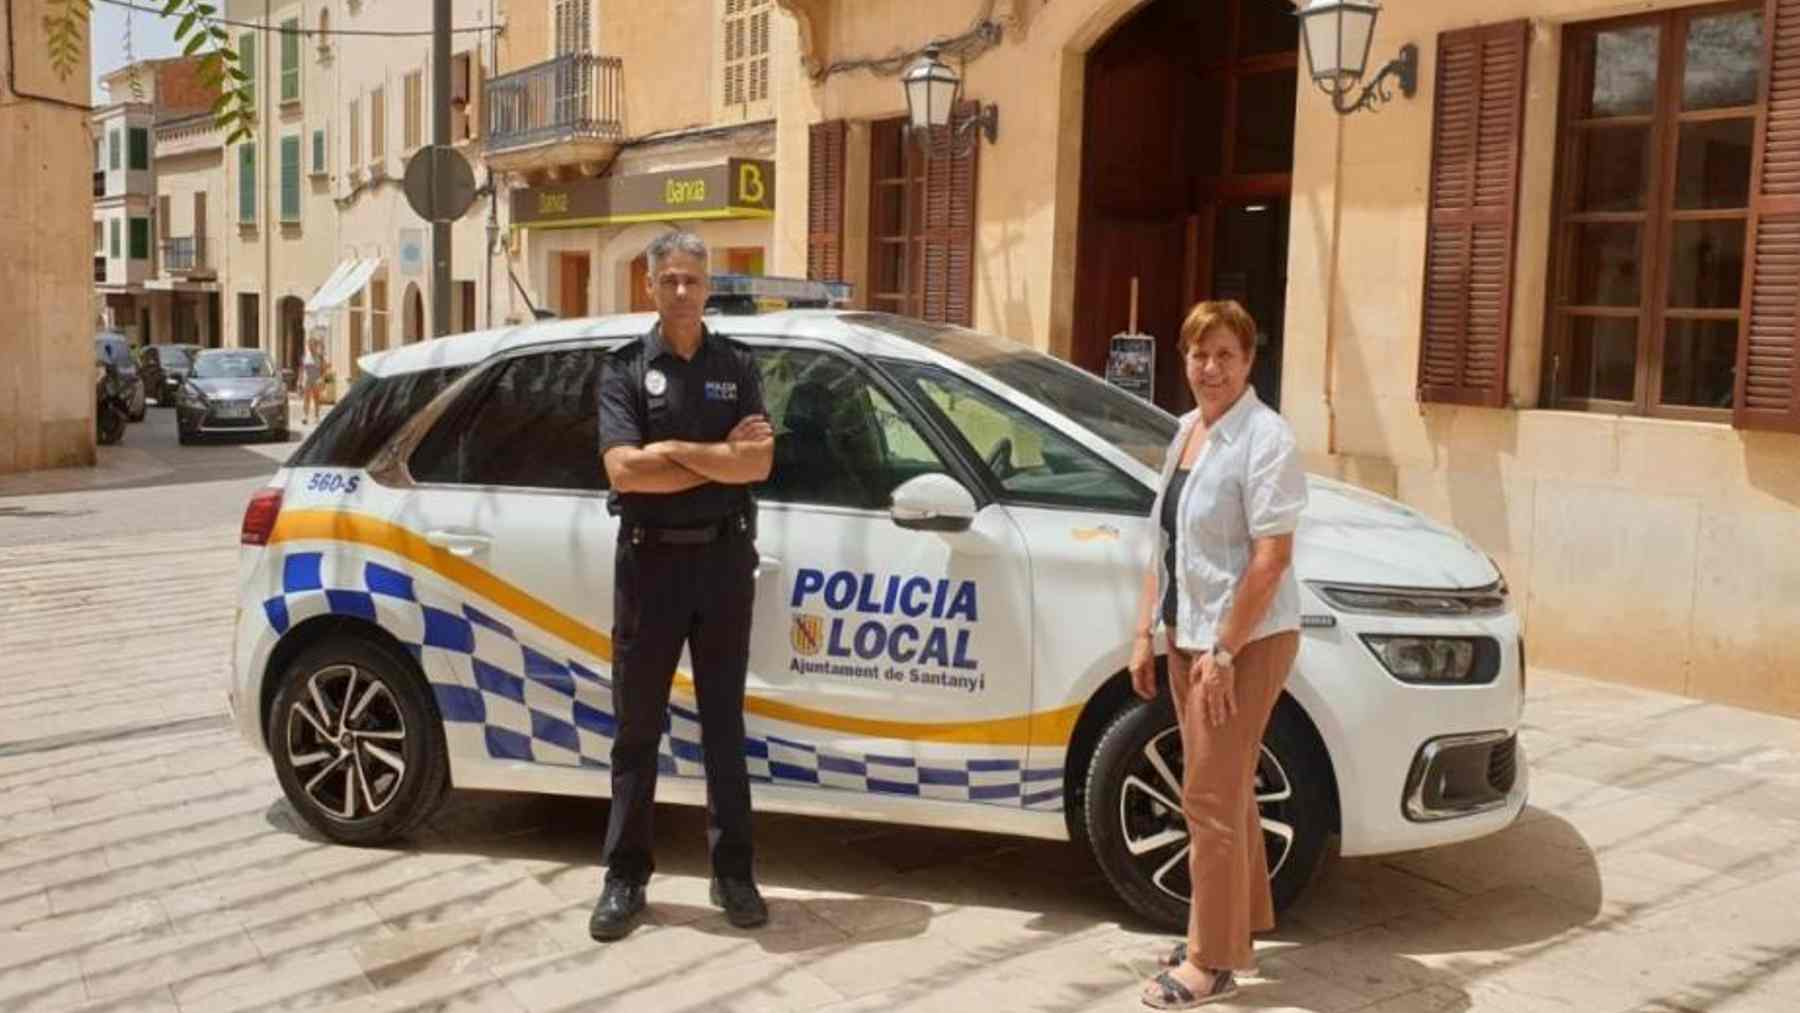 La alcaldesa de Santanyí, María Pons (PP) y un agente de la Policía Local.